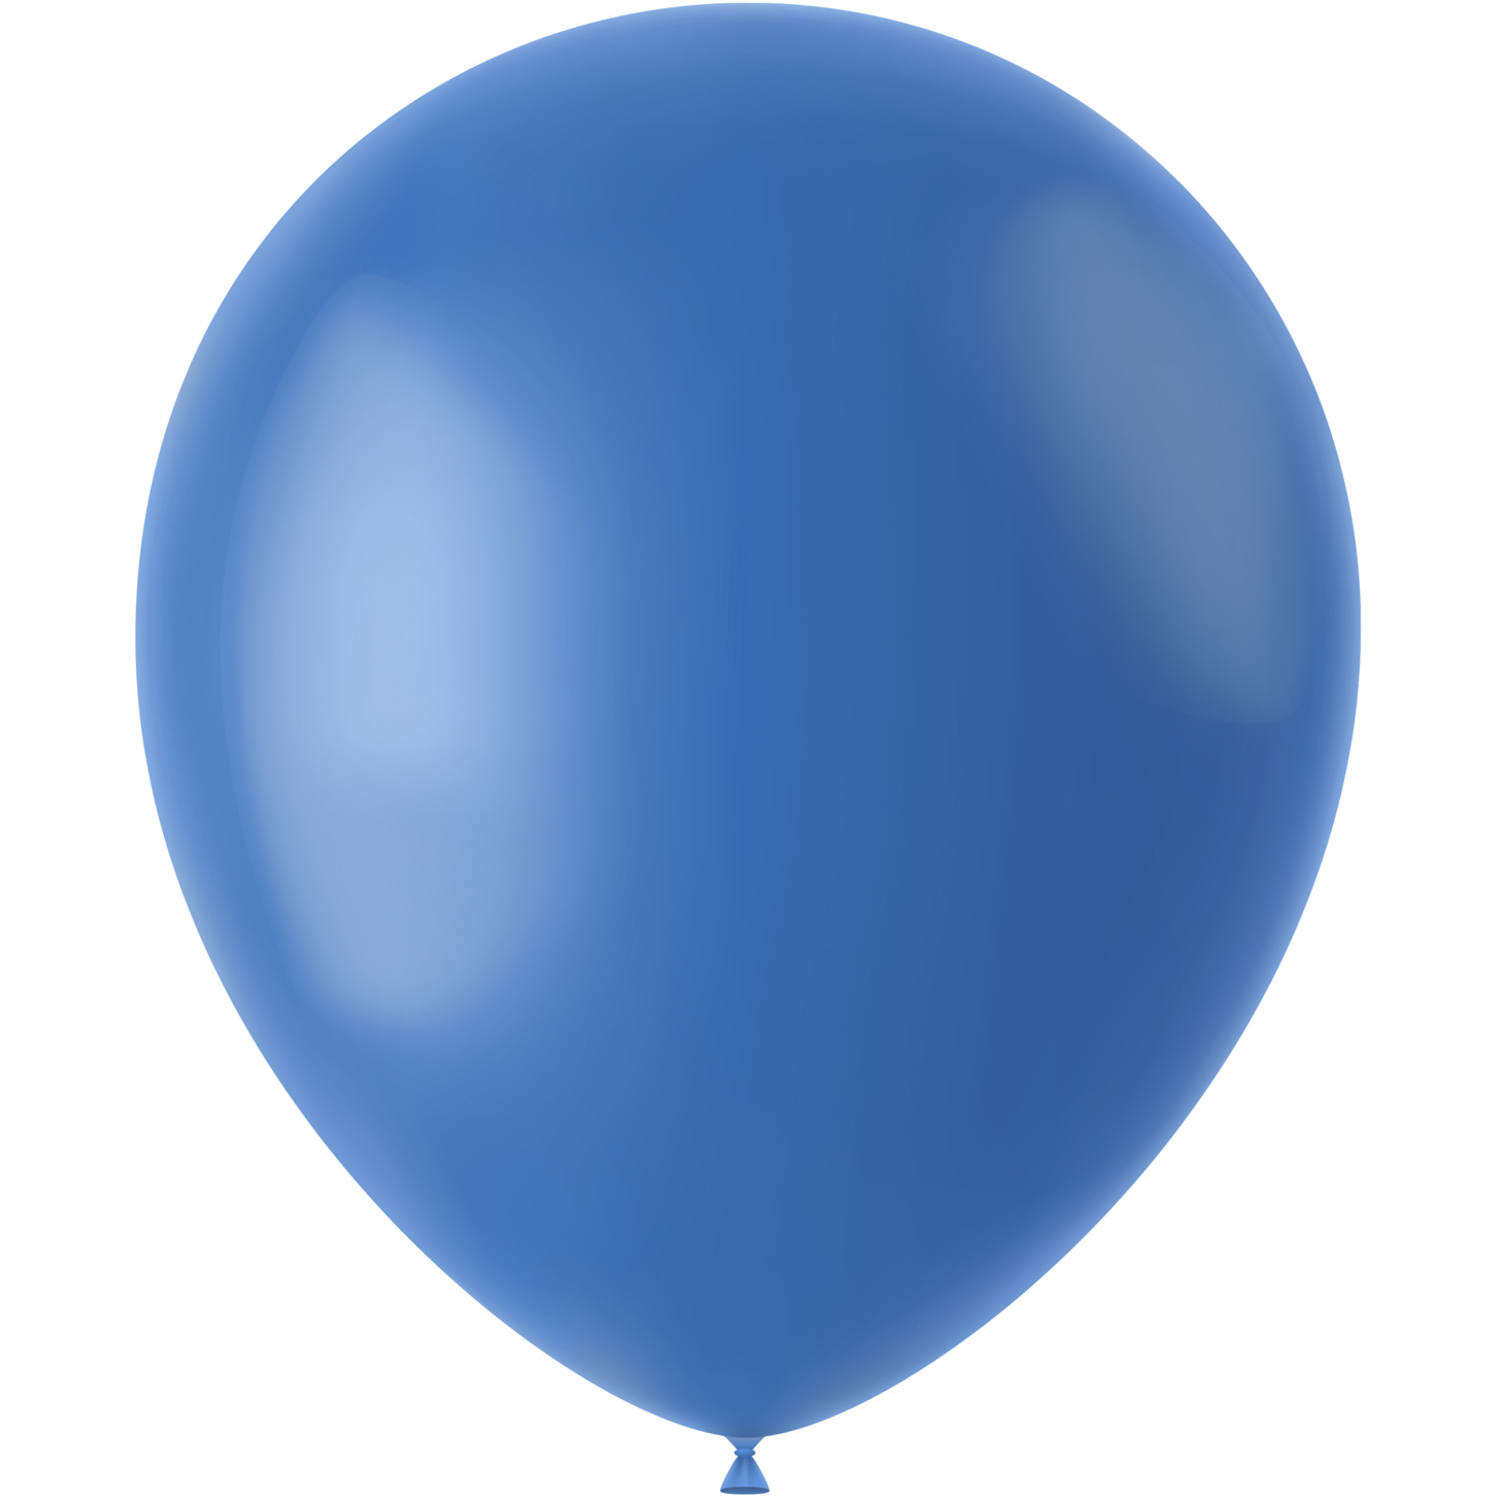 min Mordrin werk Blauwe Ballonnen bestellen - Partywinkel